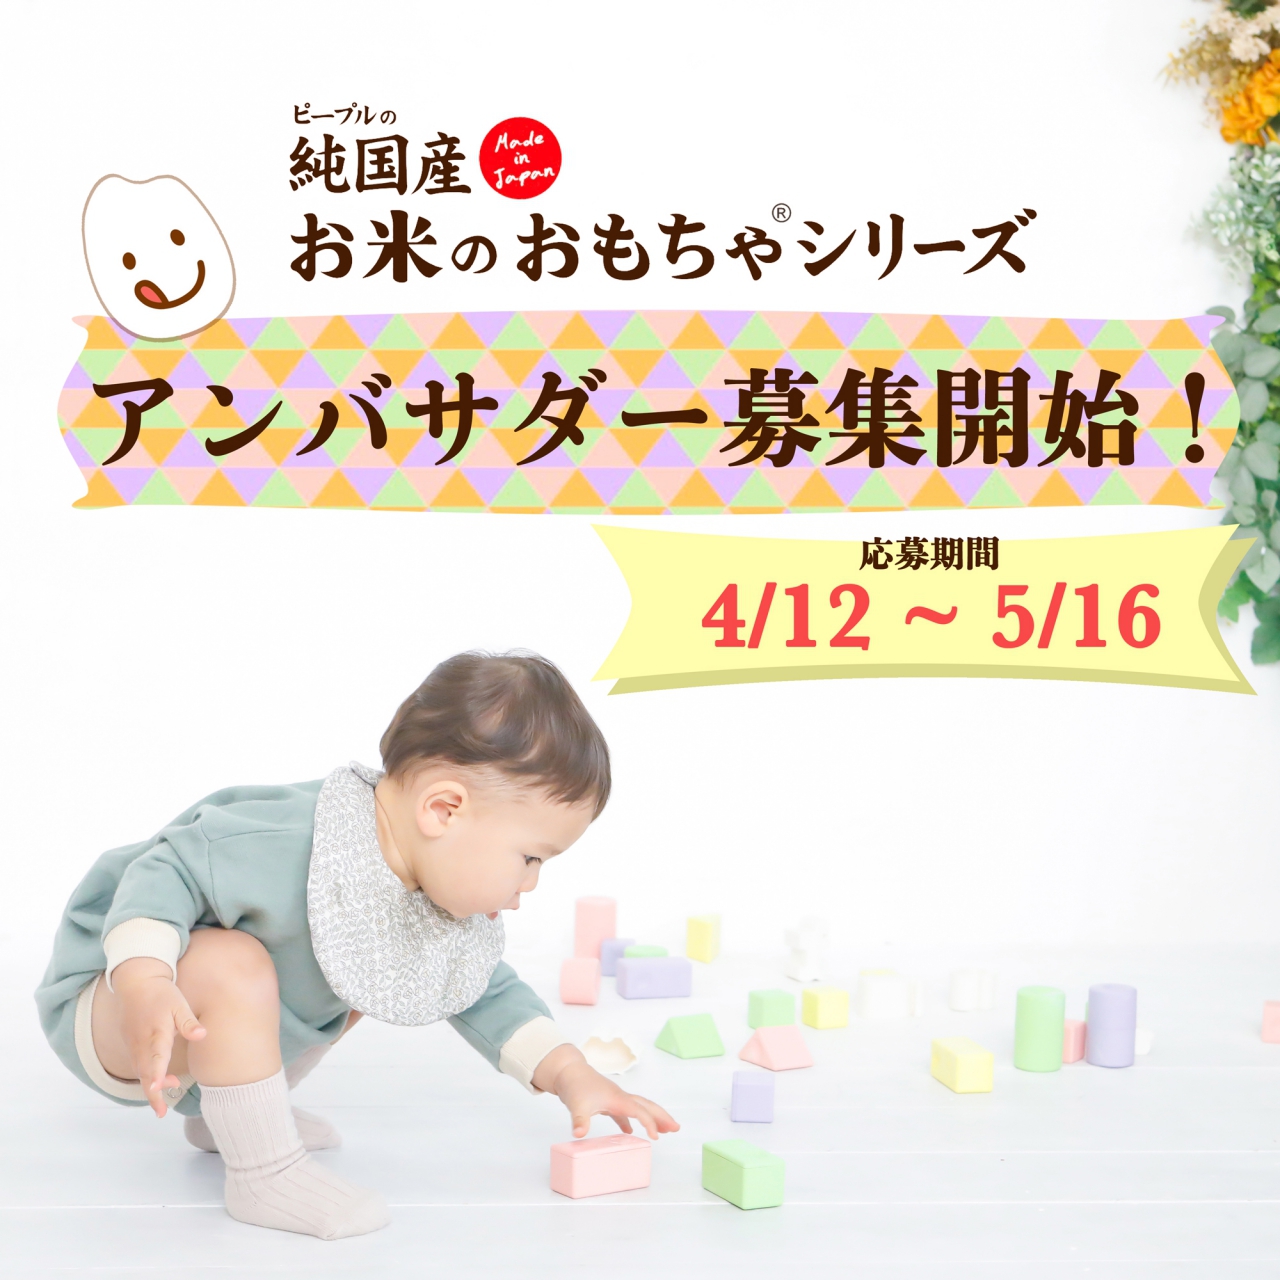 お米のおもちゃアンバサダー募集 おもちゃ 乳幼児玩具メーカー ピープル